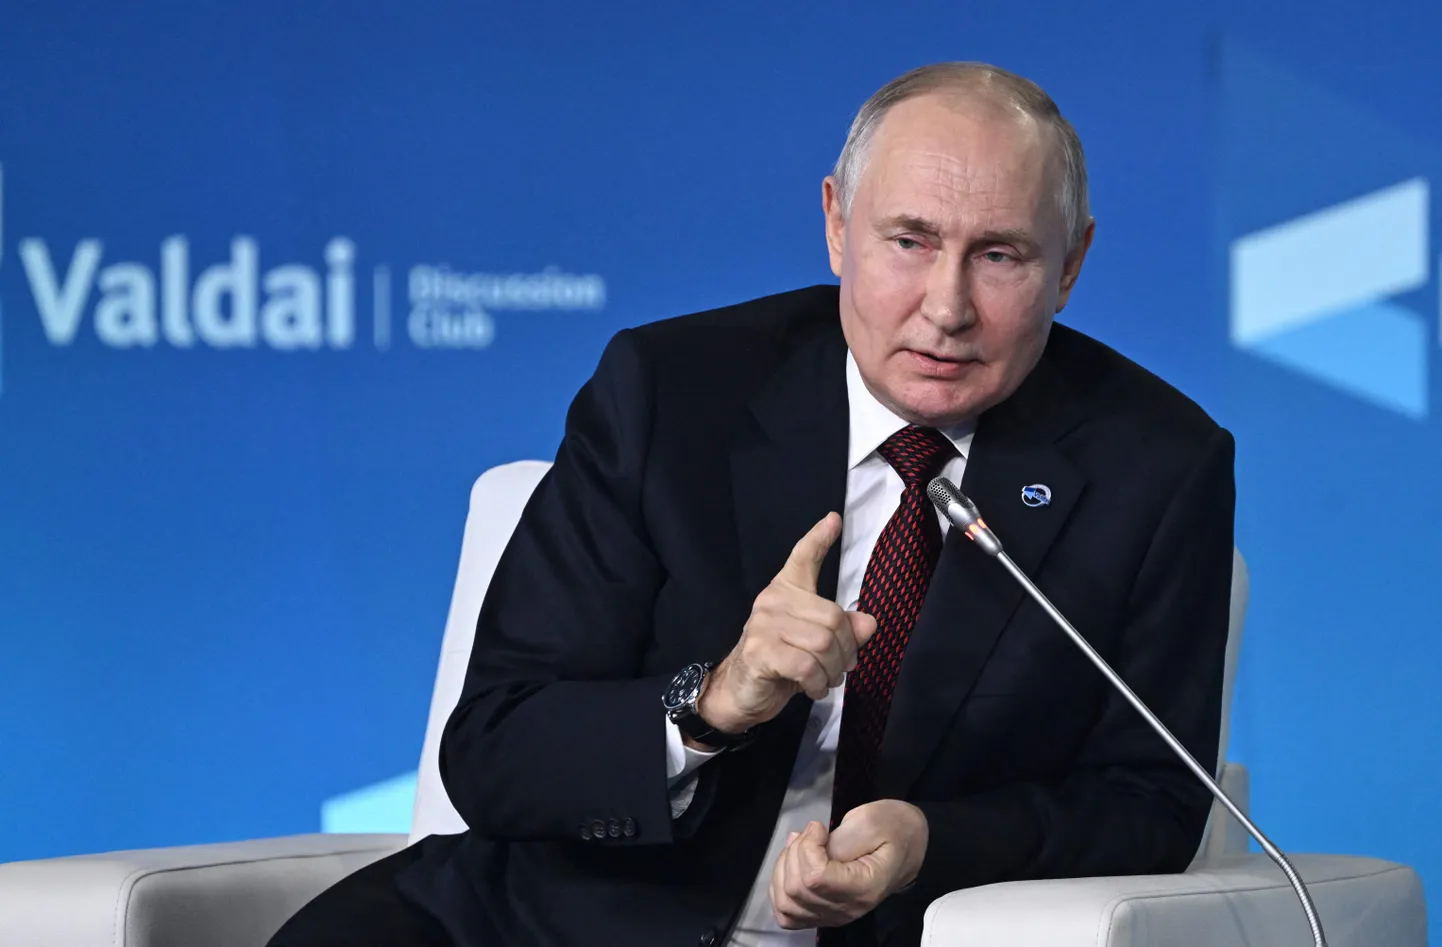 Путин выступил с назидательной лекцией на Валдайской конференции, заявив, что Россия не начинала войну и борется против западного колониализма. 5 октября 2023 года.